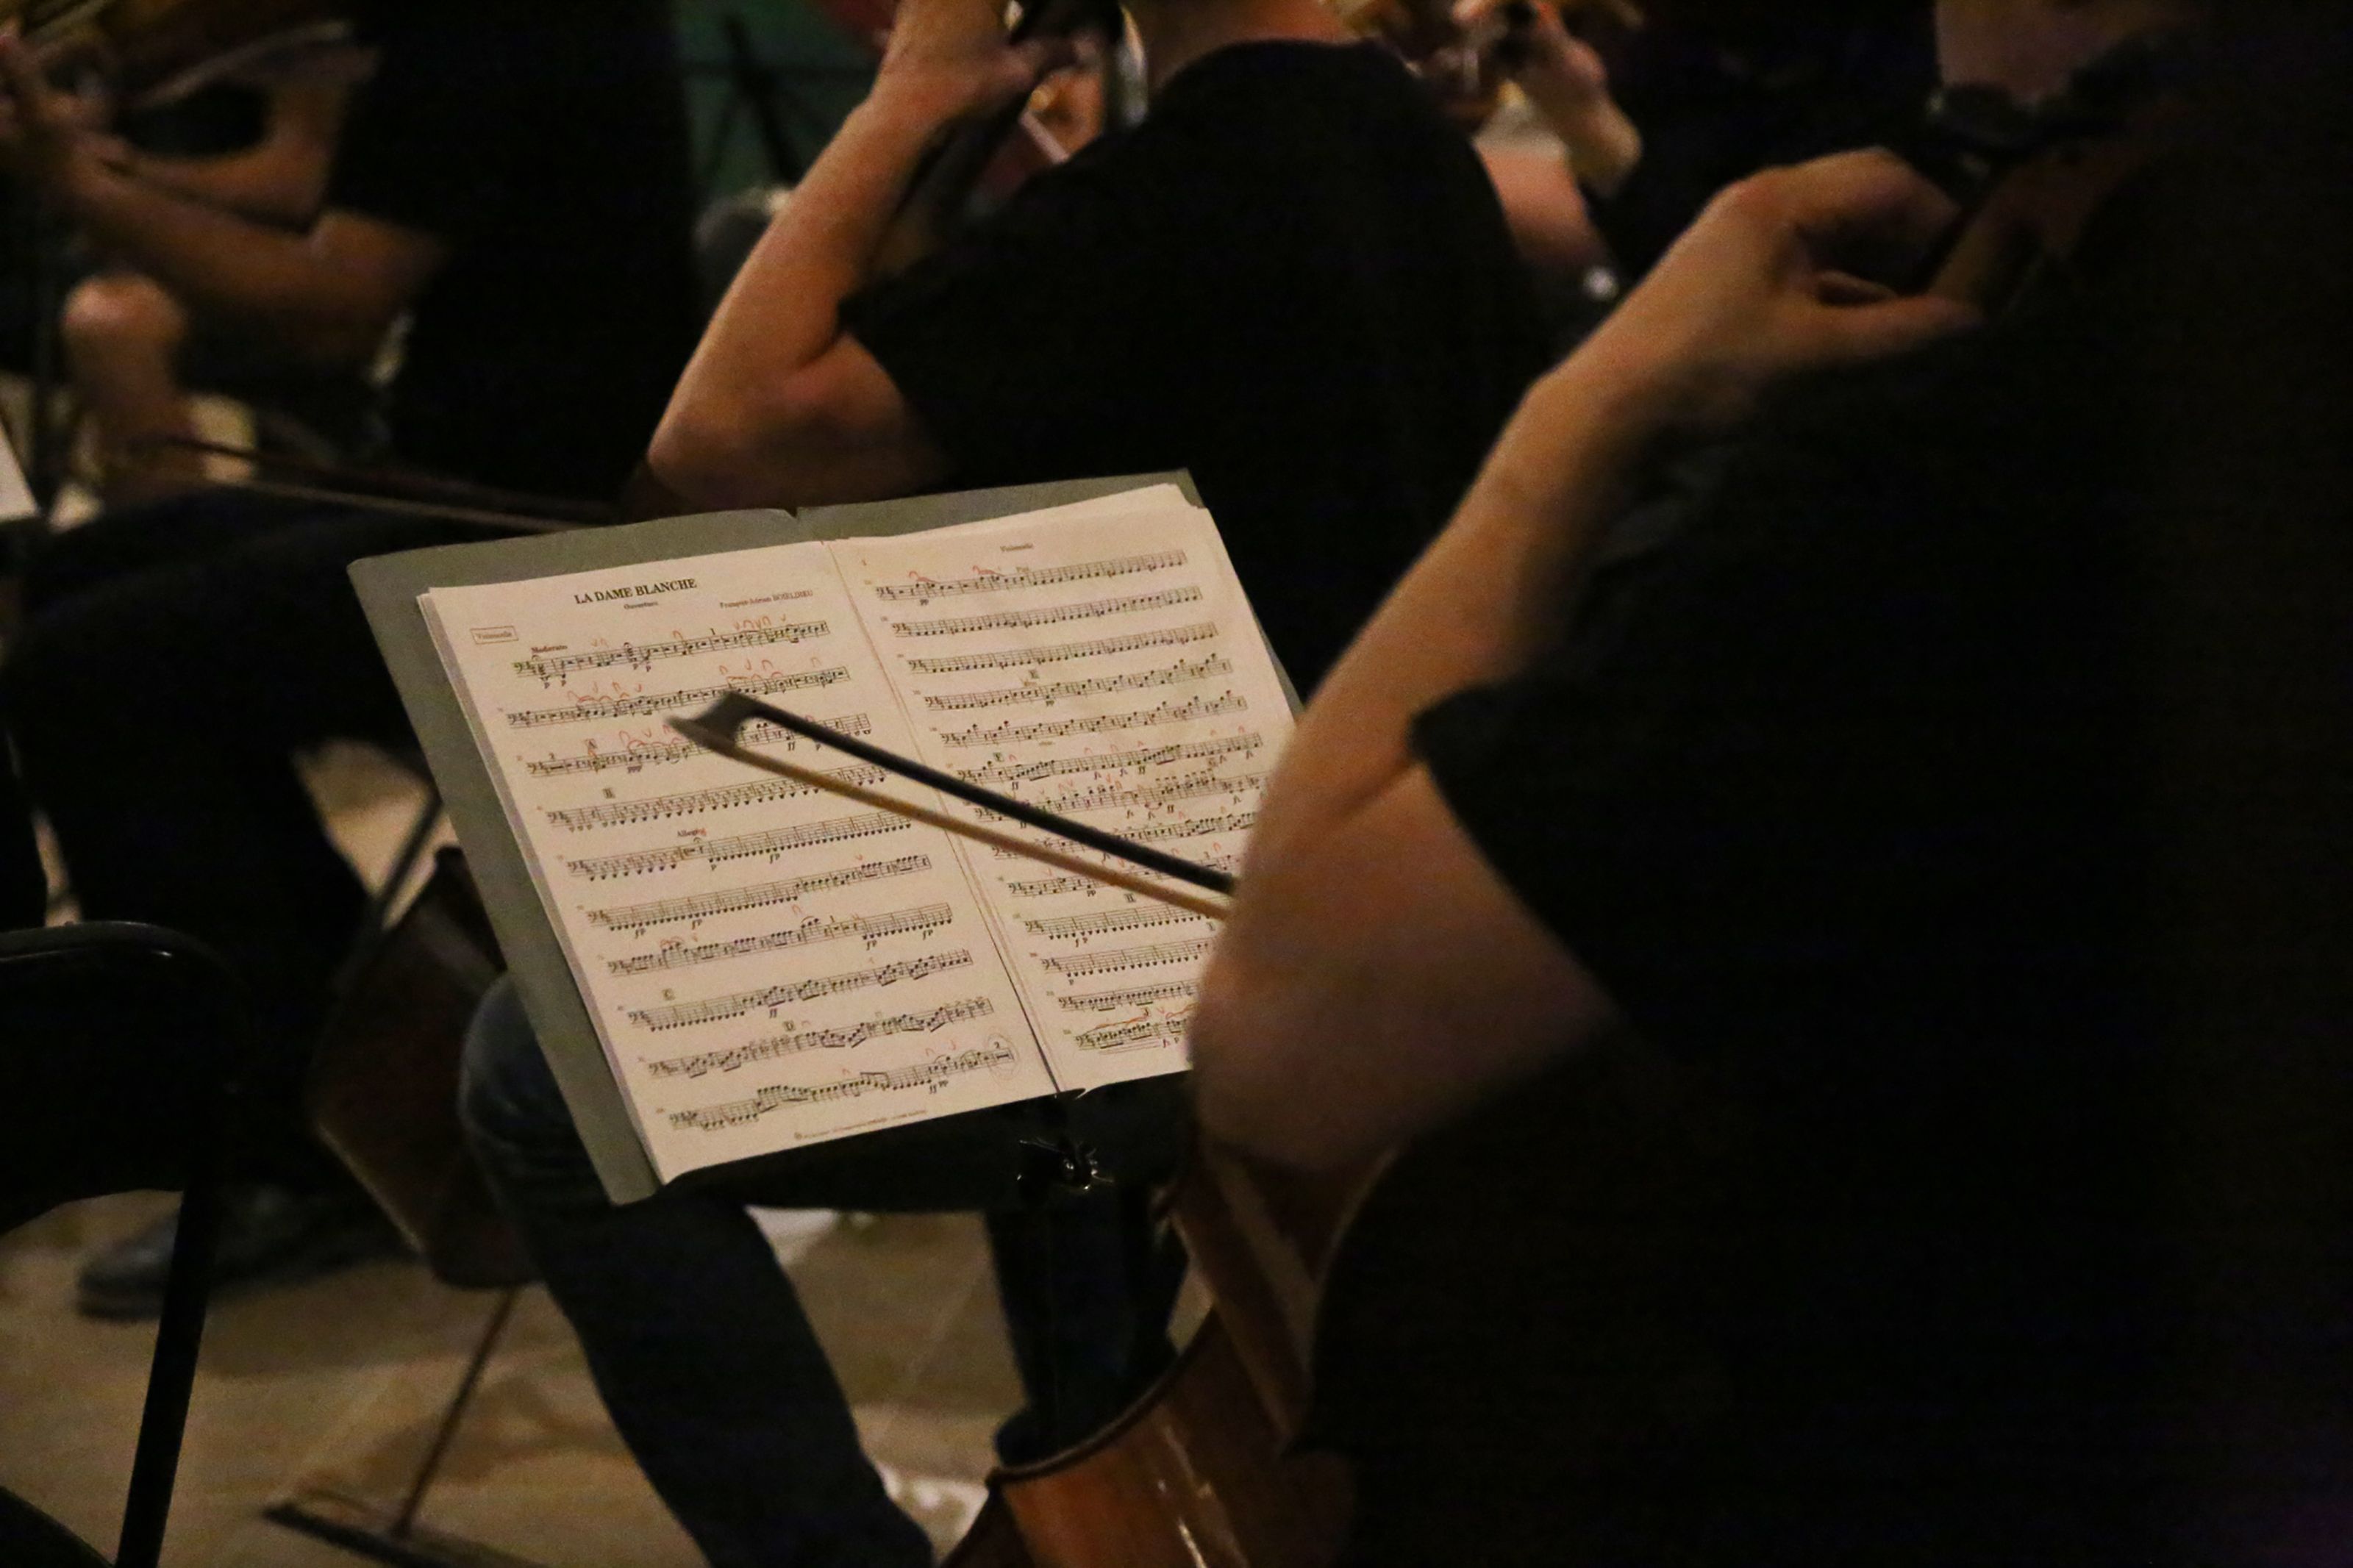 Concert de Festa Major amb l'Orquestra Simfònica Fusió Sant Cugat. FOTO: Anna Bassa